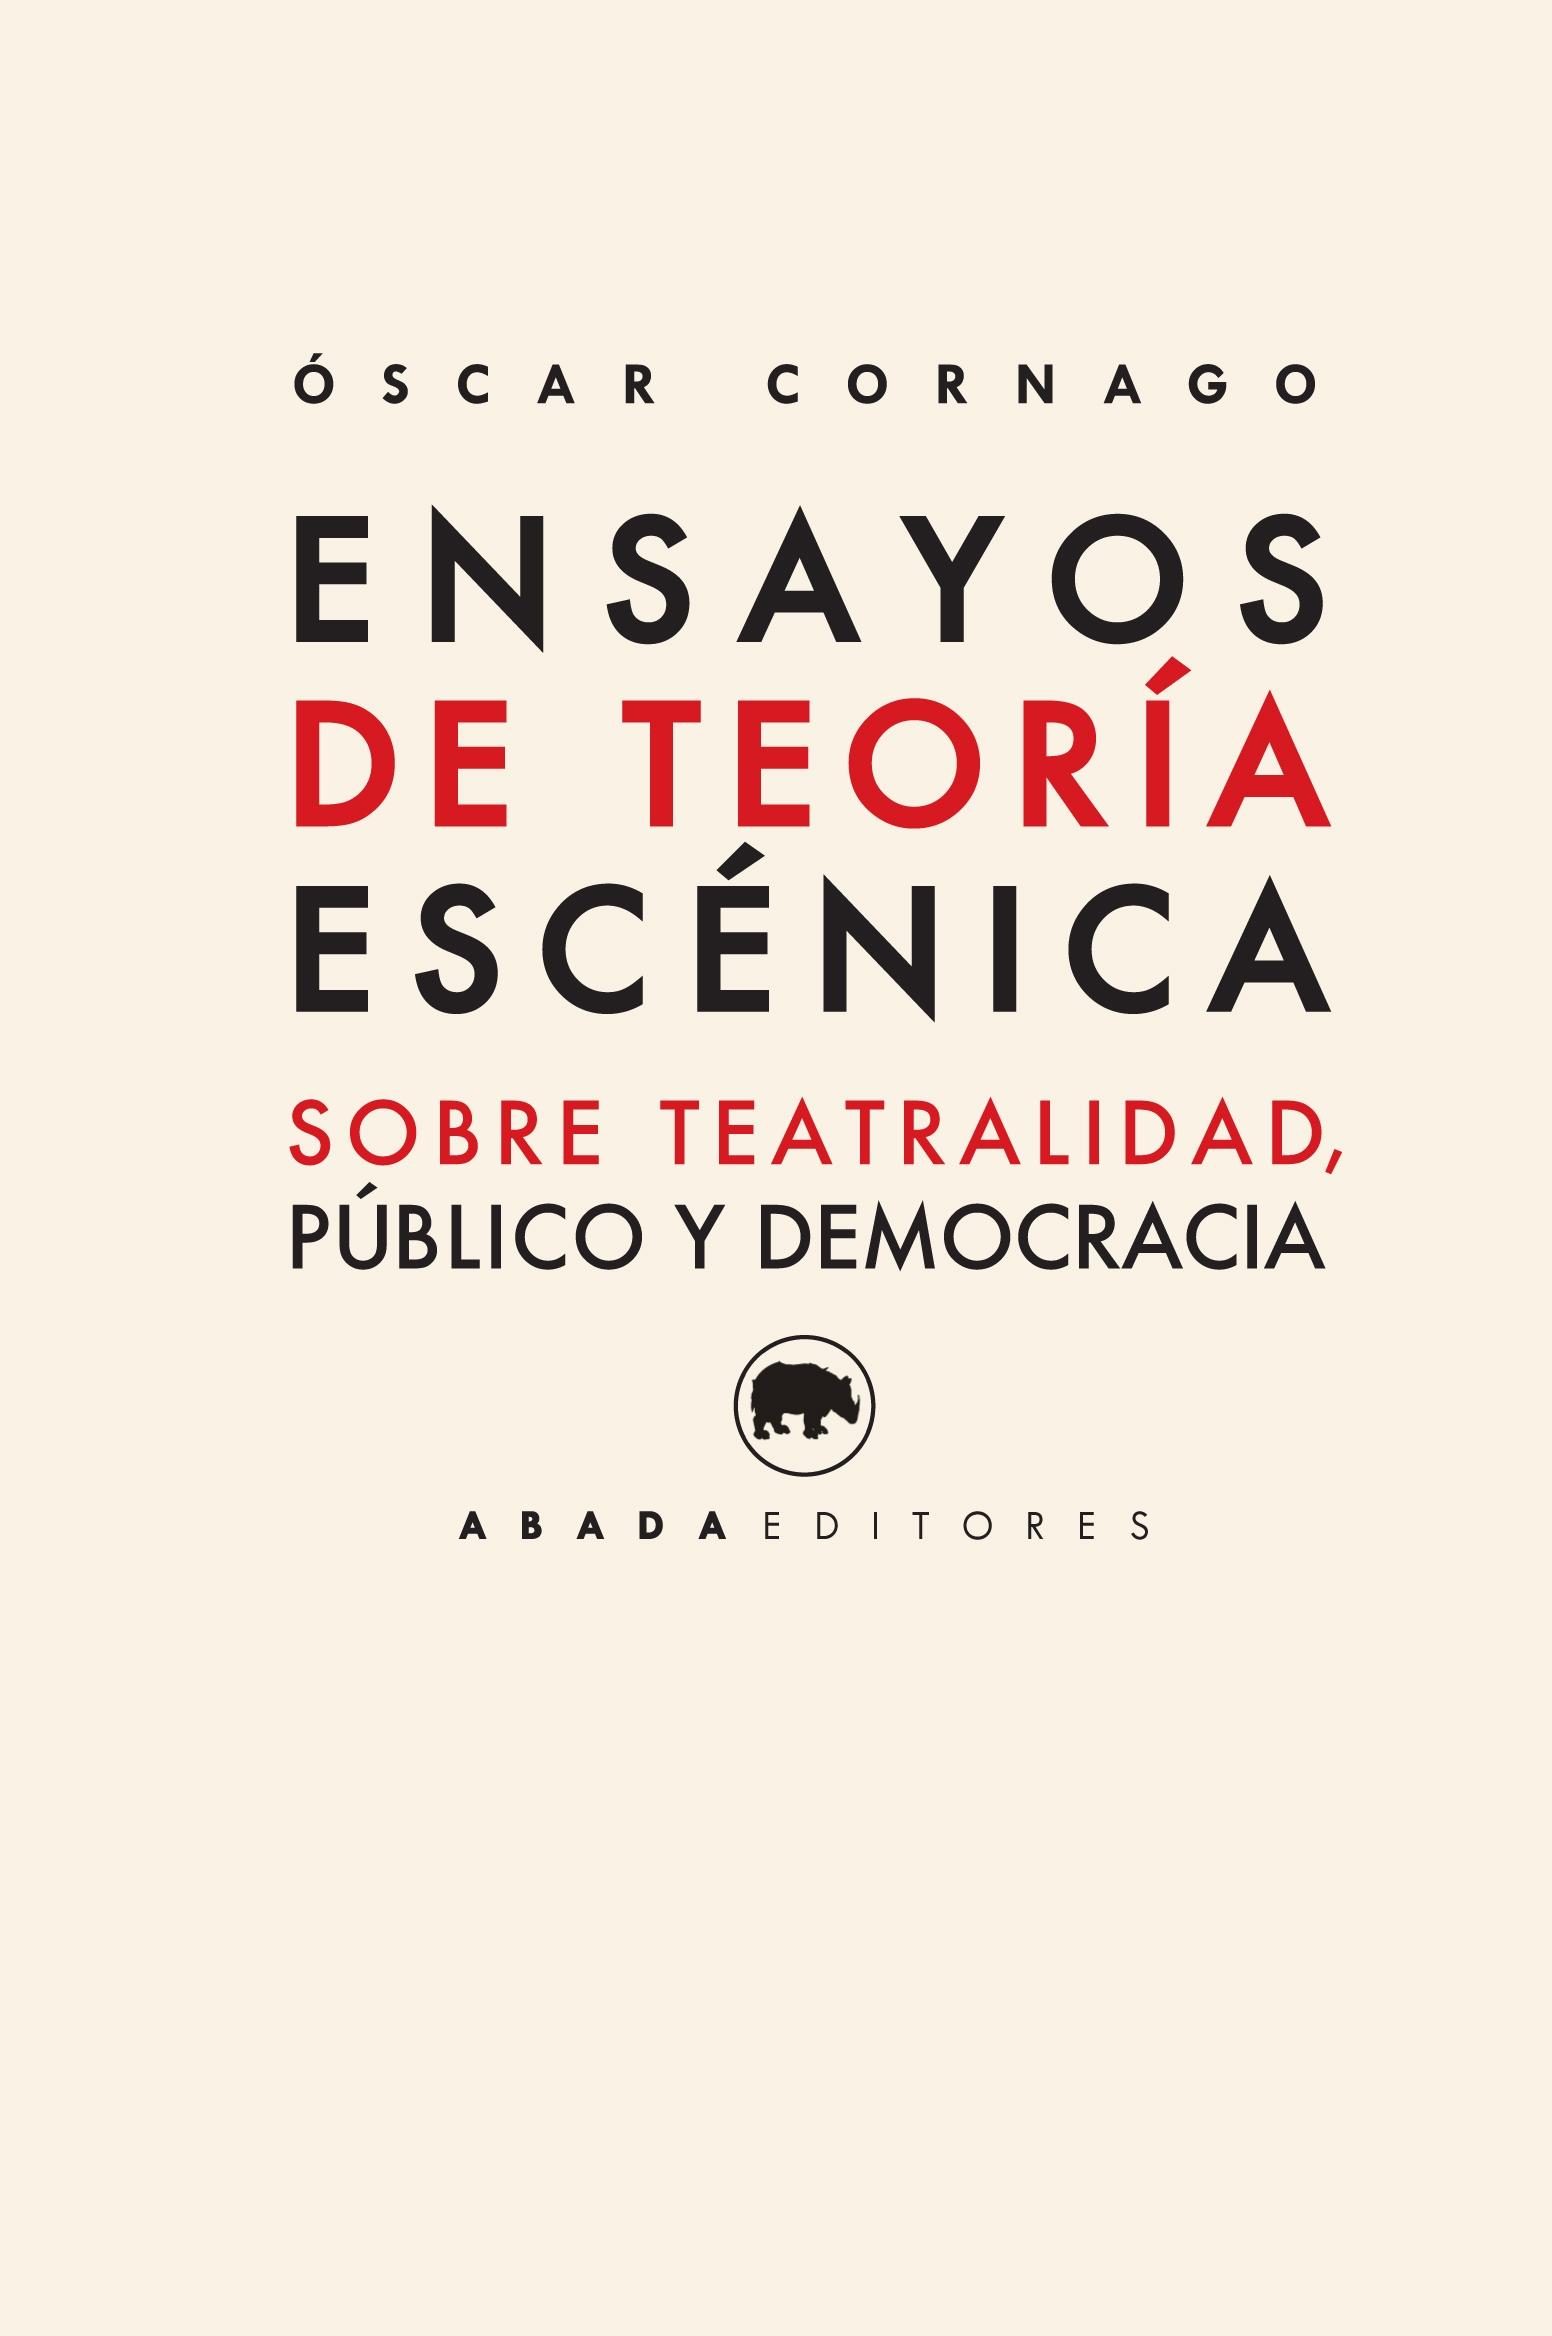 ENSAYOS DE TEORÍA ESCÉNICA "SOBRE TEATRALIDAD, PÚBLICO Y DEMOCRACIA"